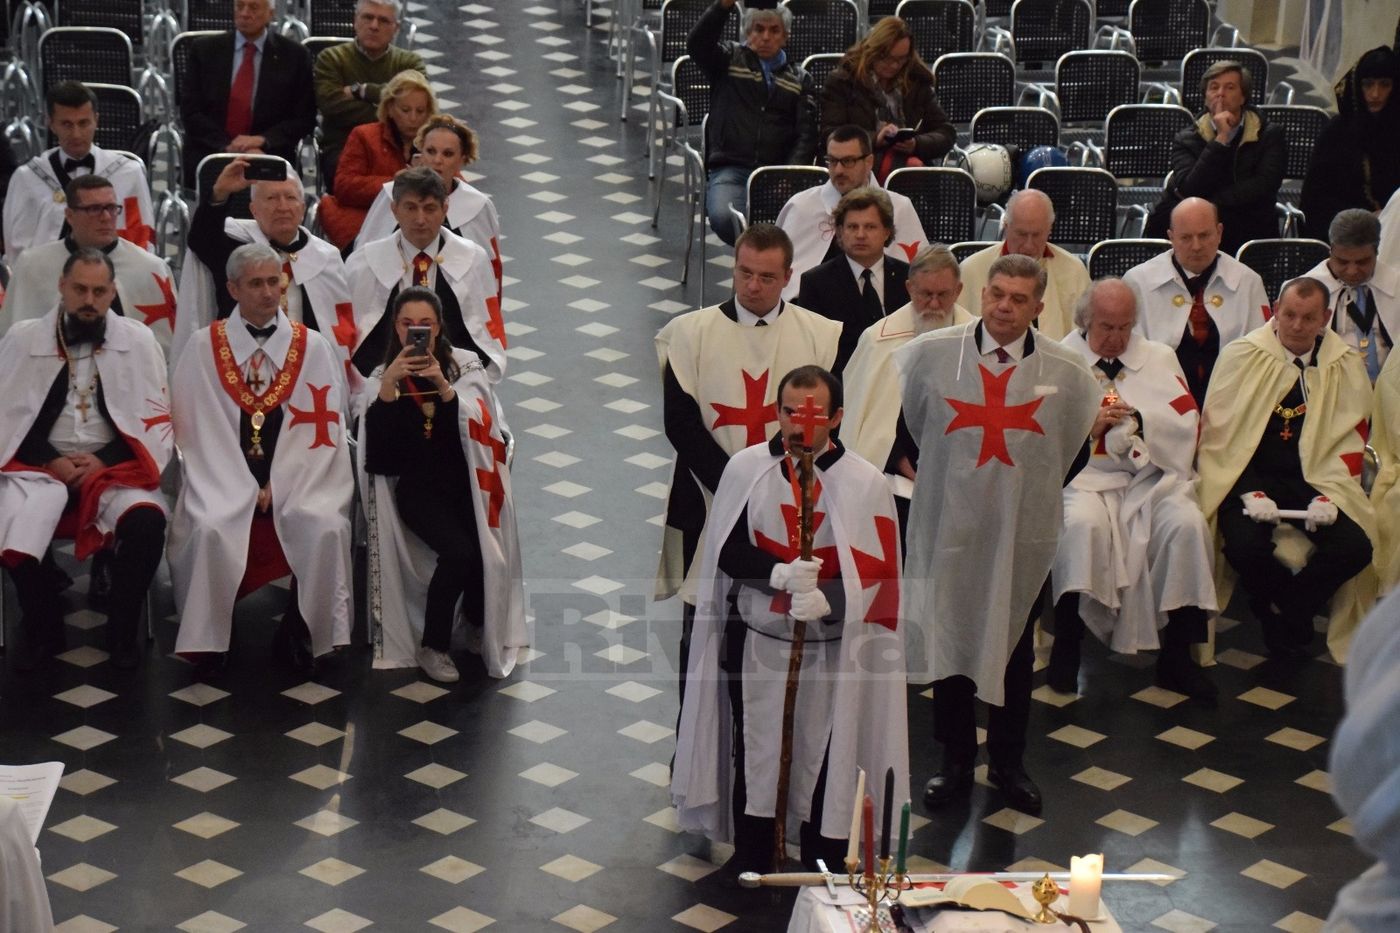 Cavalieri Templari ex chiesa San Francesco Ventimiglia 1 dicembre 2018